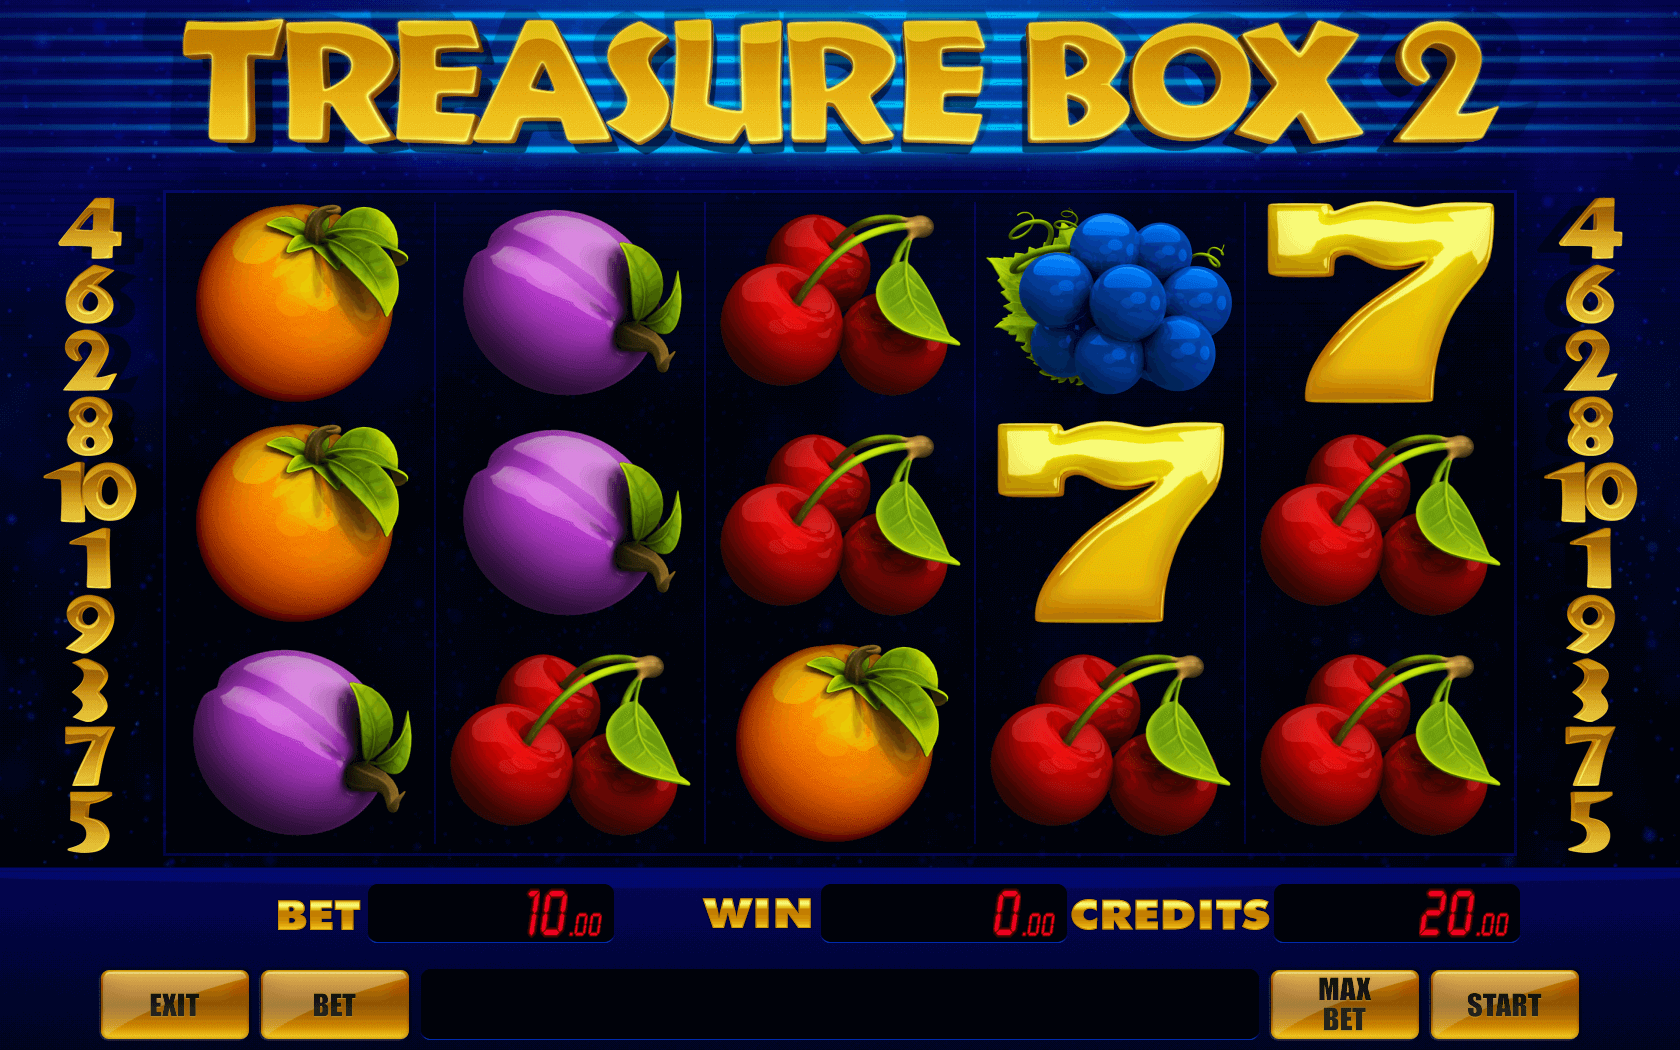 Treasure Box 2